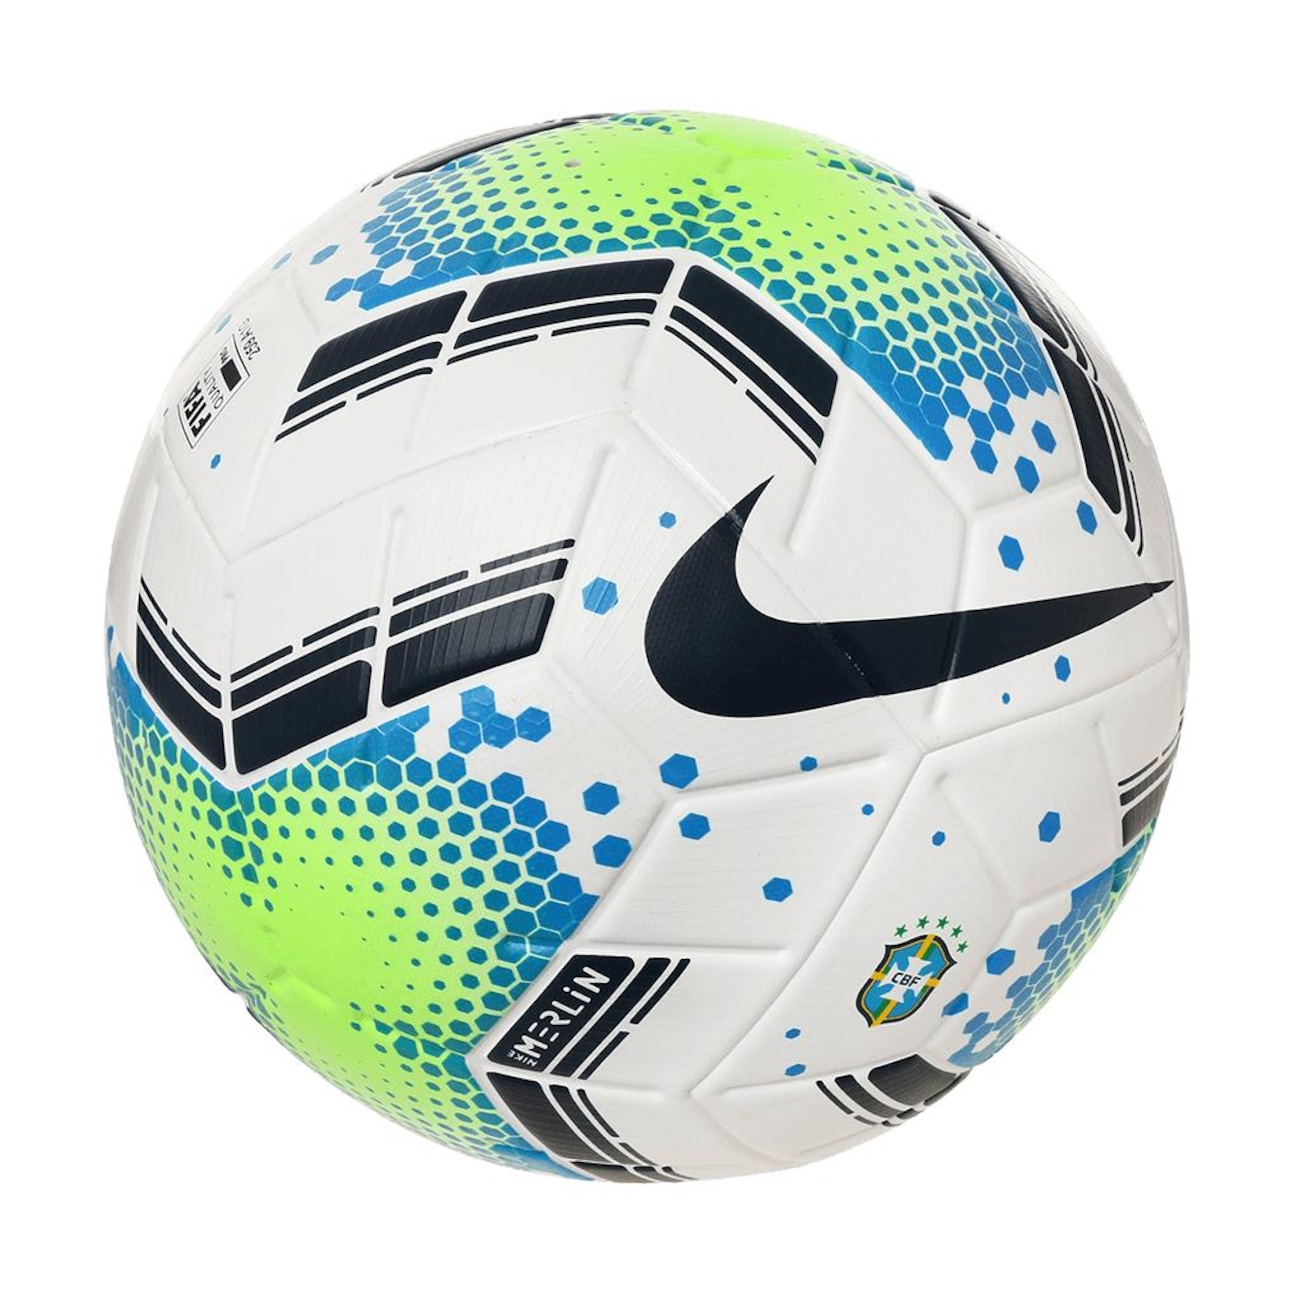 Nike Bola de futebol Merlin USA FIFA oficial jogo de futebol tamanho 5